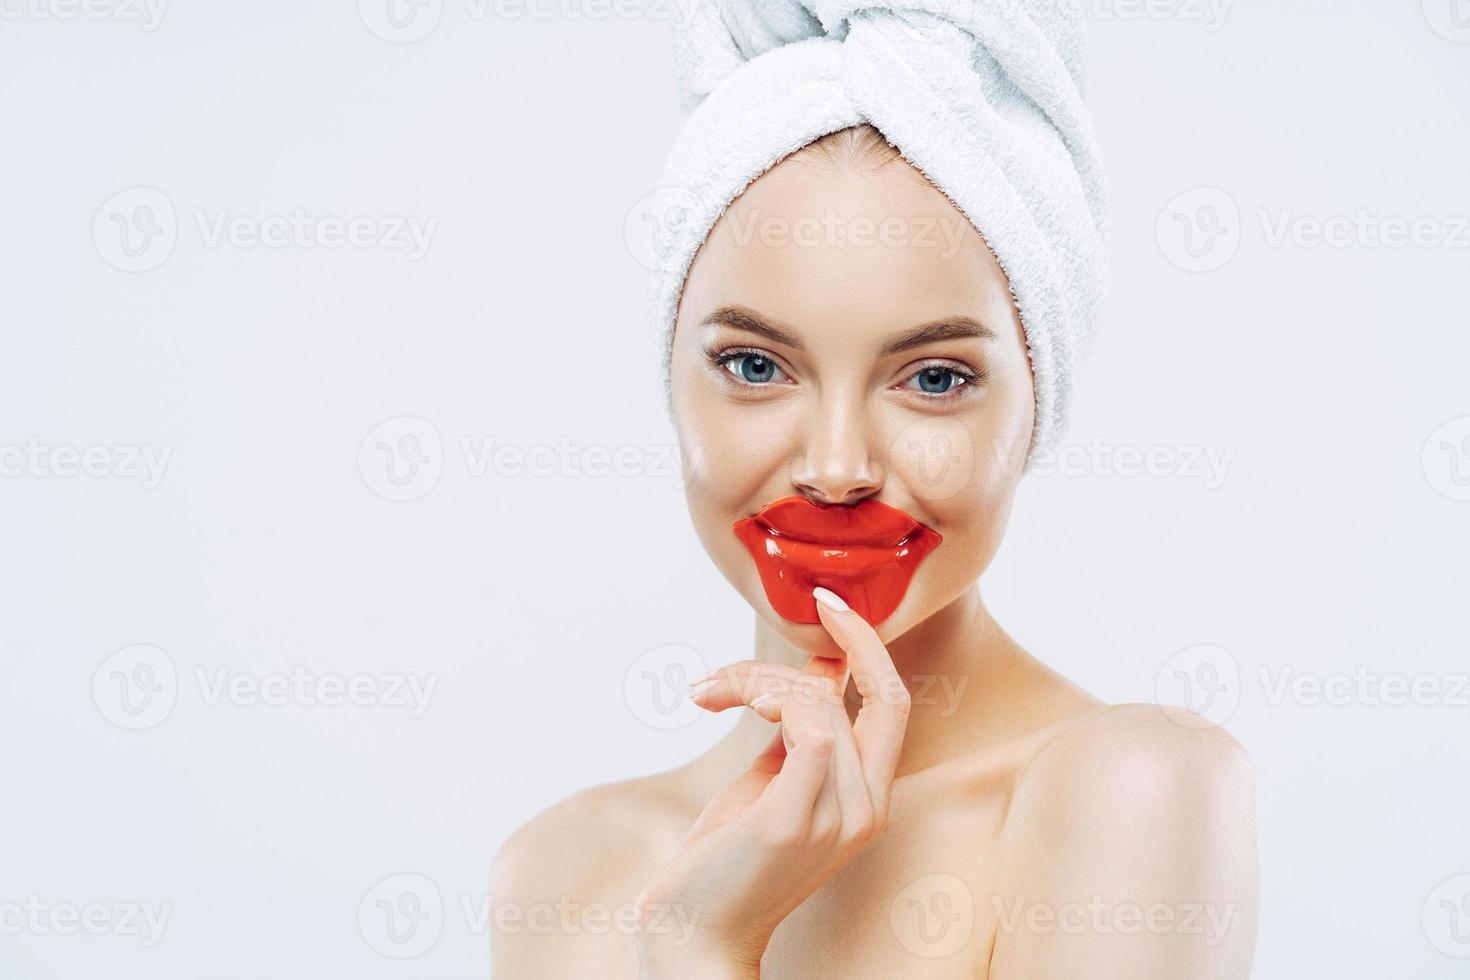 una donna sana dall'aspetto piacevole mantiene le macchie sulle labbra, indossa un asciugamano sulla testa, ha una pelle pulita e pura dopo la procedura igienica, sta a torso nudo su sfondo bianco, spazio vuoto per la tua pubblicità foto